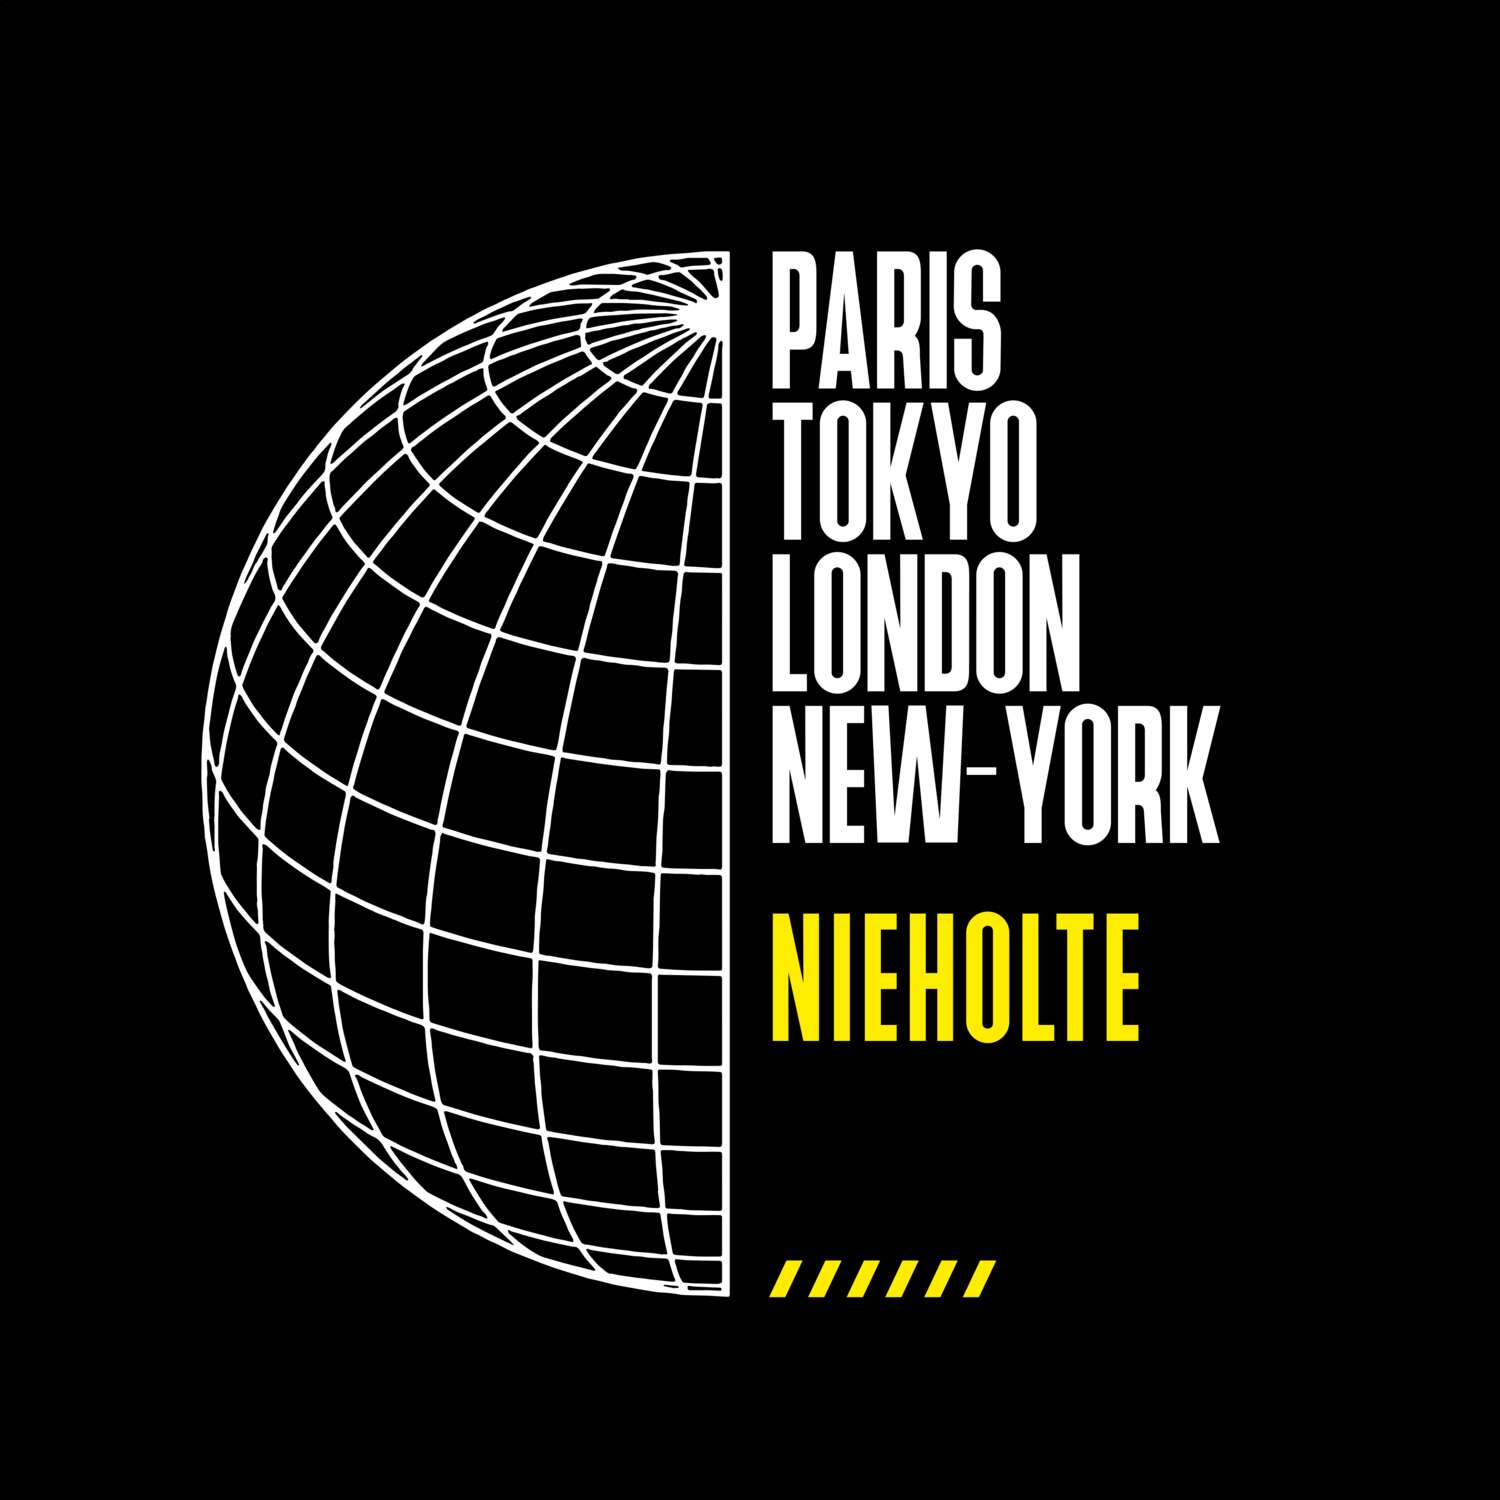 Nieholte T-Shirt »Paris Tokyo London«